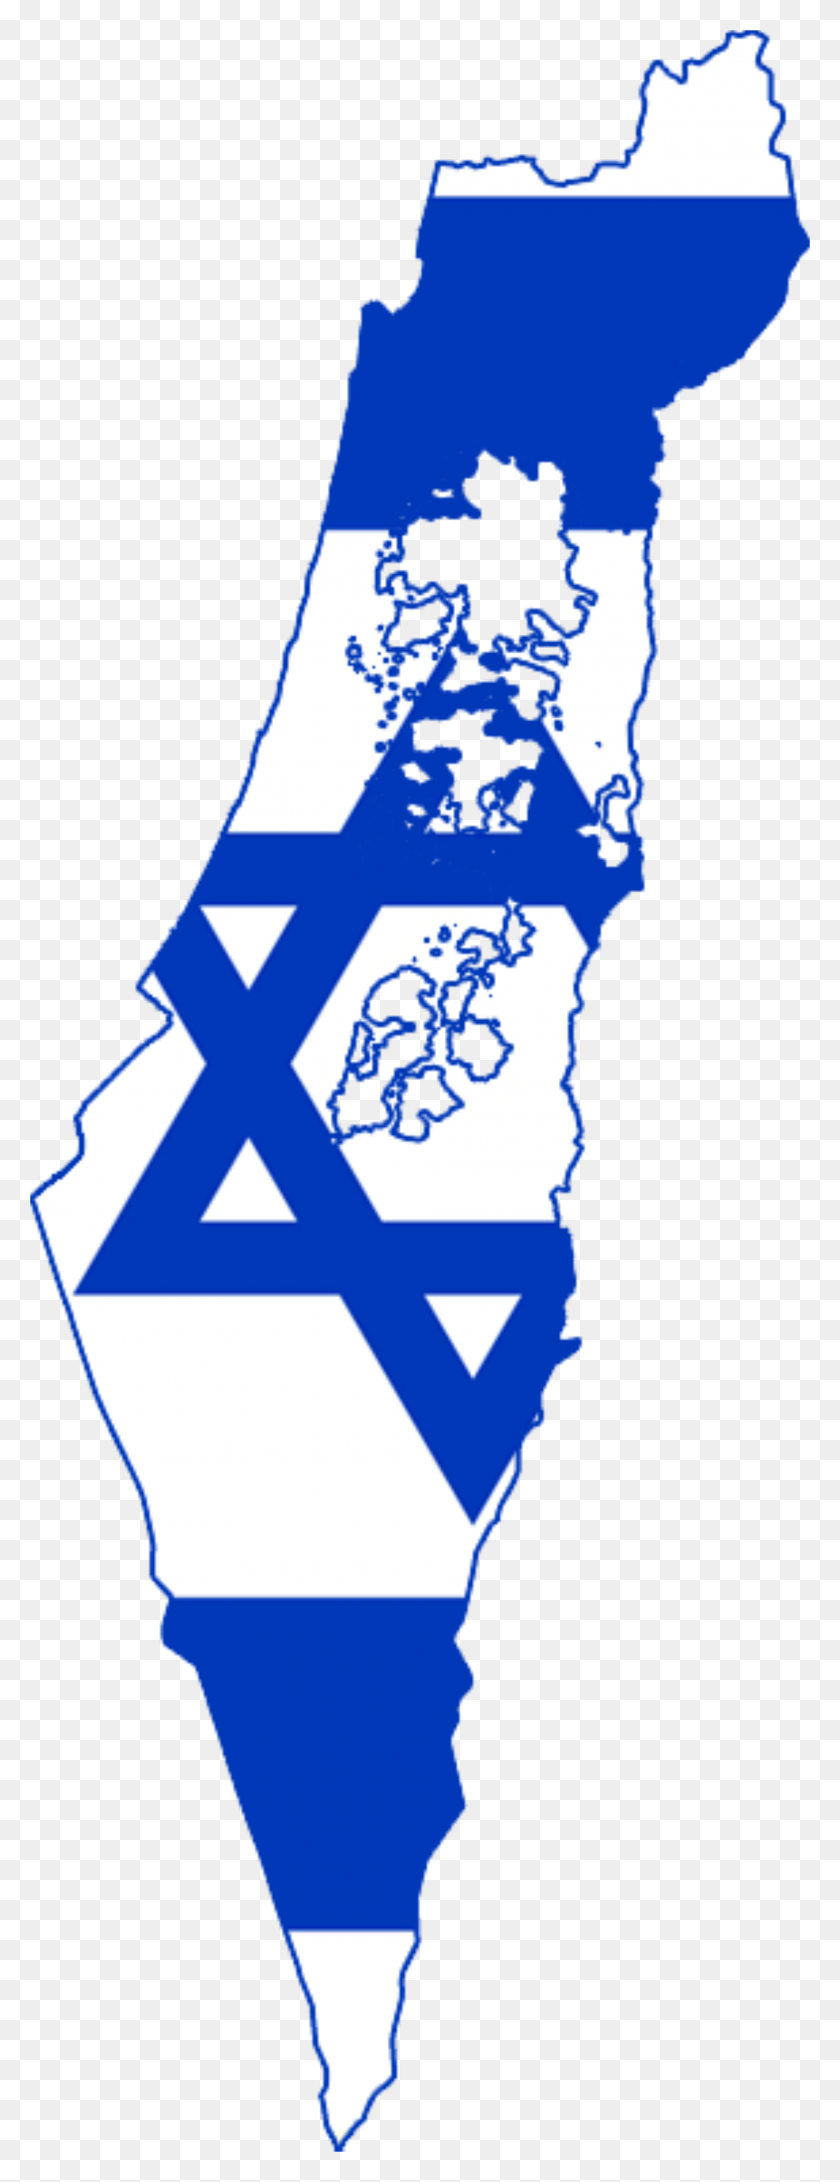 2000x5443 Mapa De La Bandera De Israel - Bandera De Israel Png